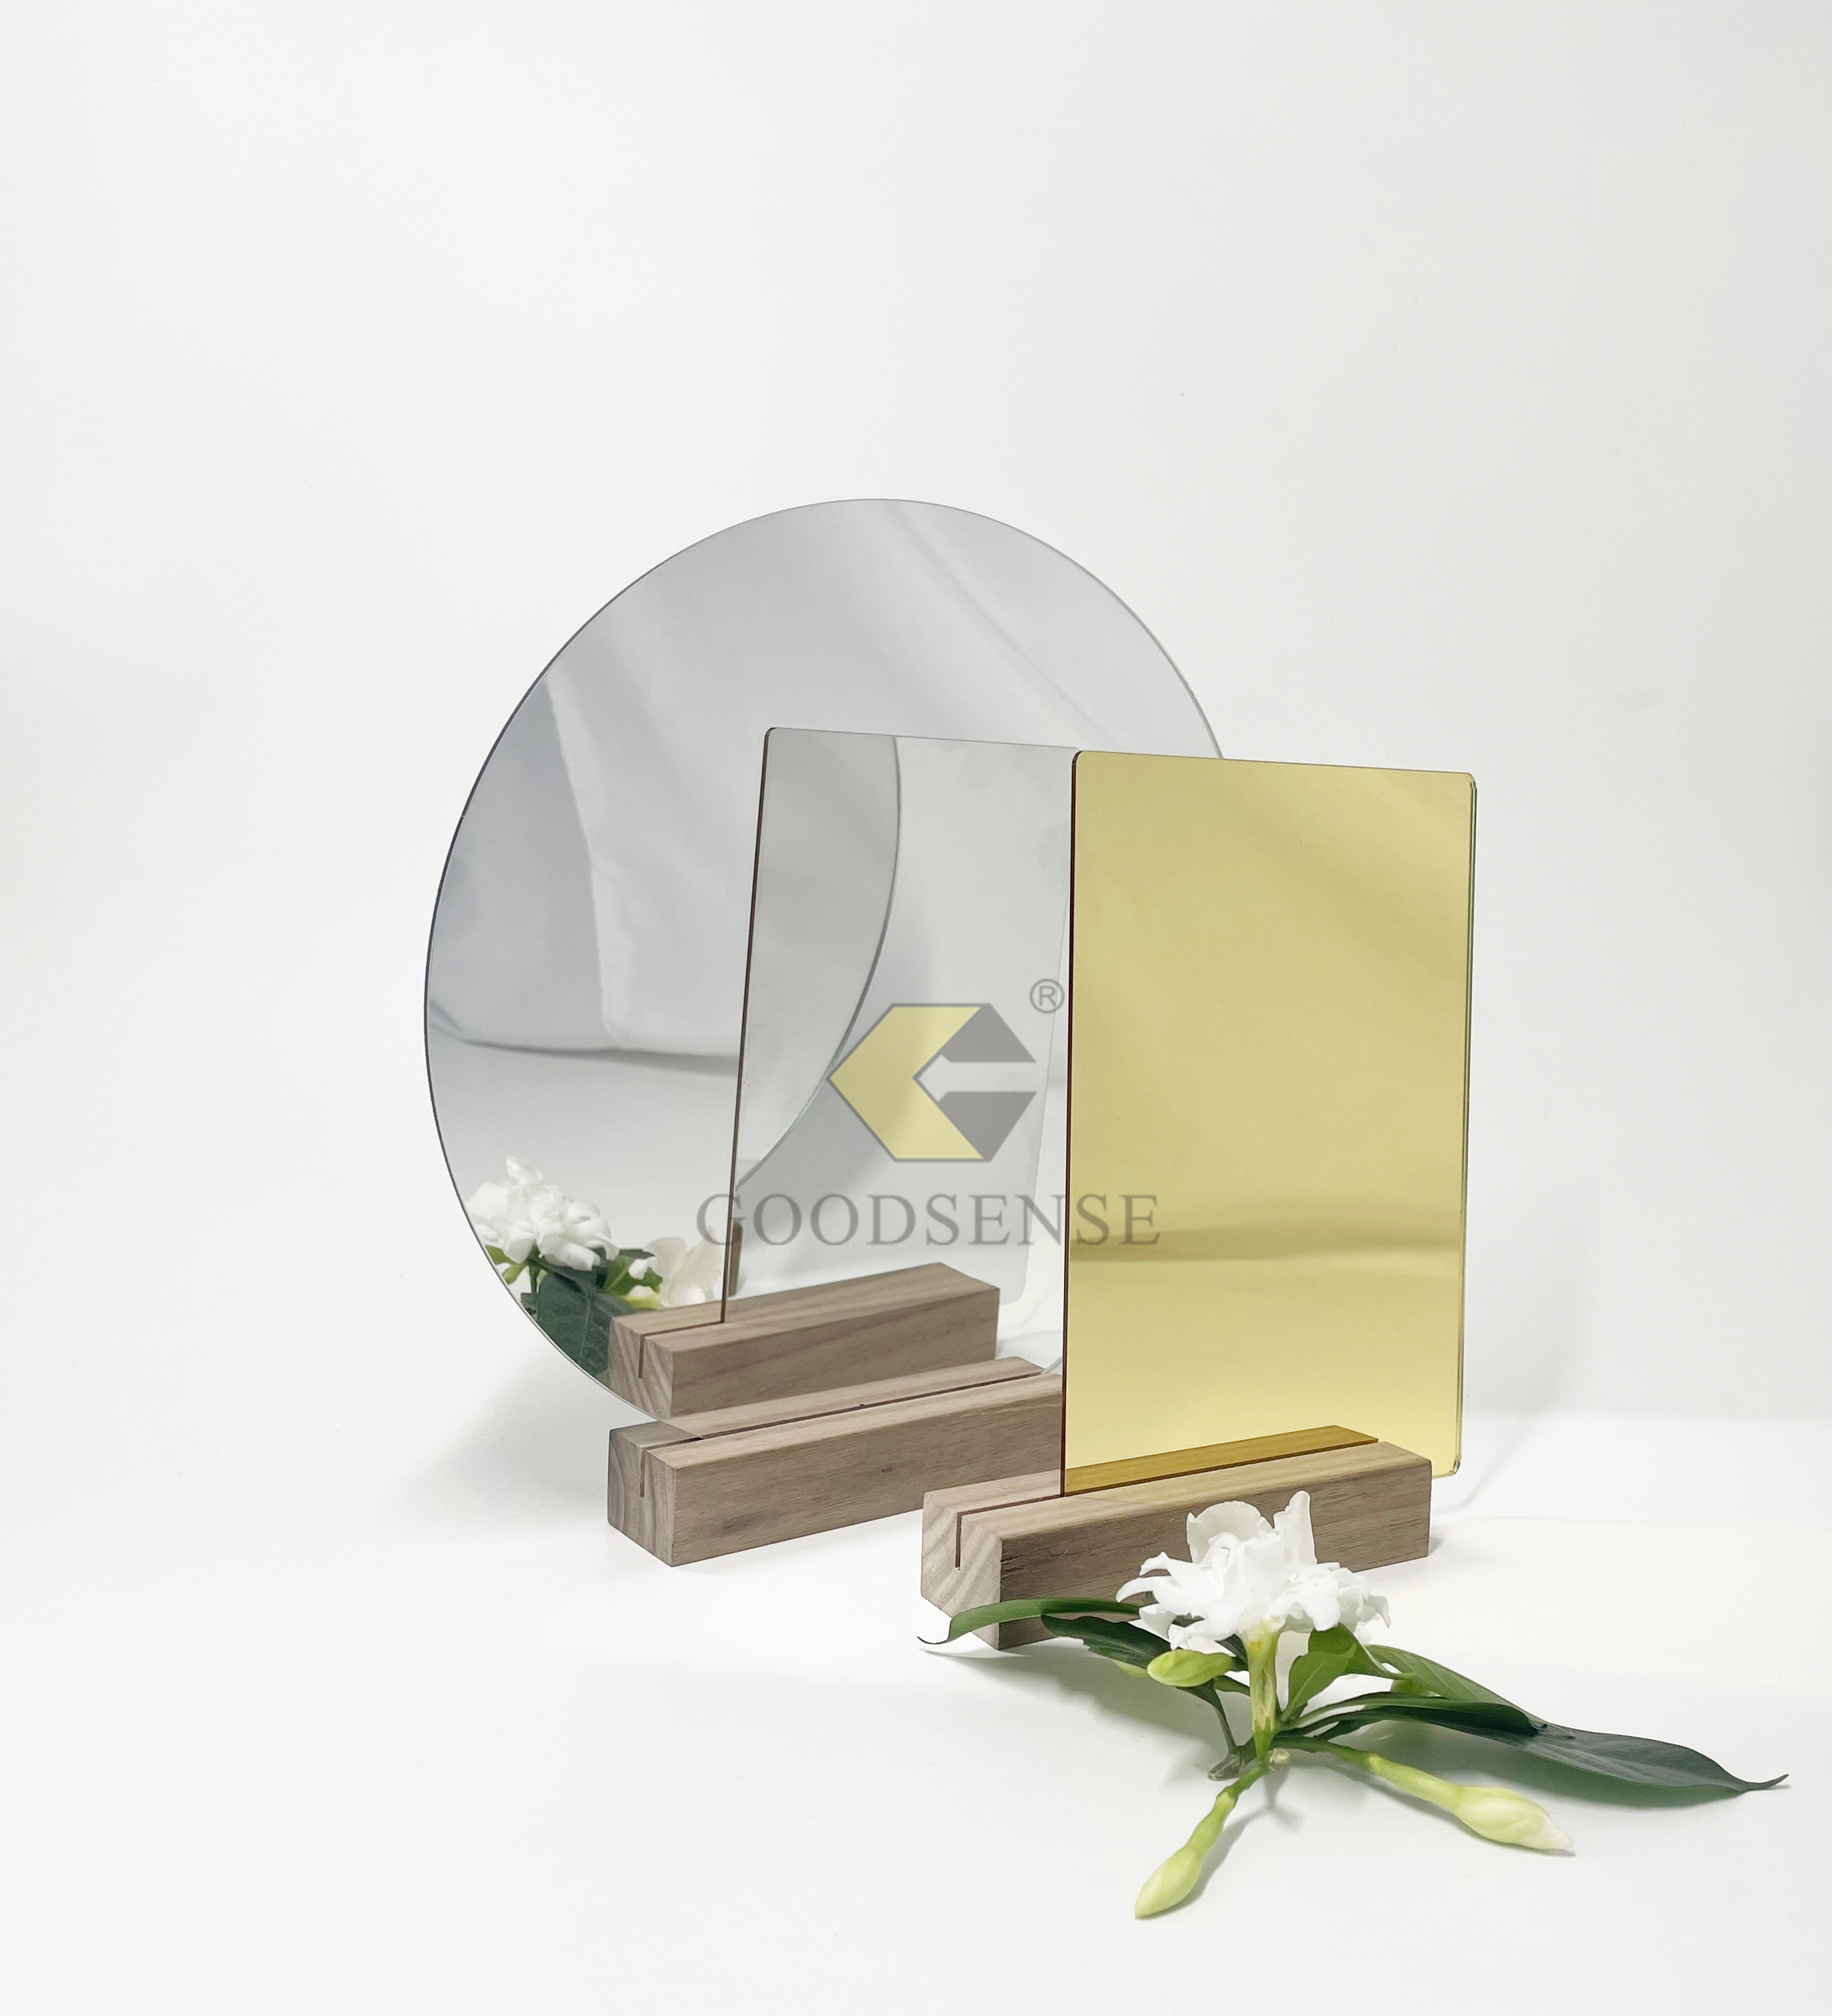 Goodsense Acrílico Dorado Fabricación de espejos de doble cara 4*8 Grandes espejos de oro Lucite cortados con láser personalizados Paneles de espejo livianos Espejo de metacrilato Azulejos reflectantes Acrílico reflejado para invitación de boda